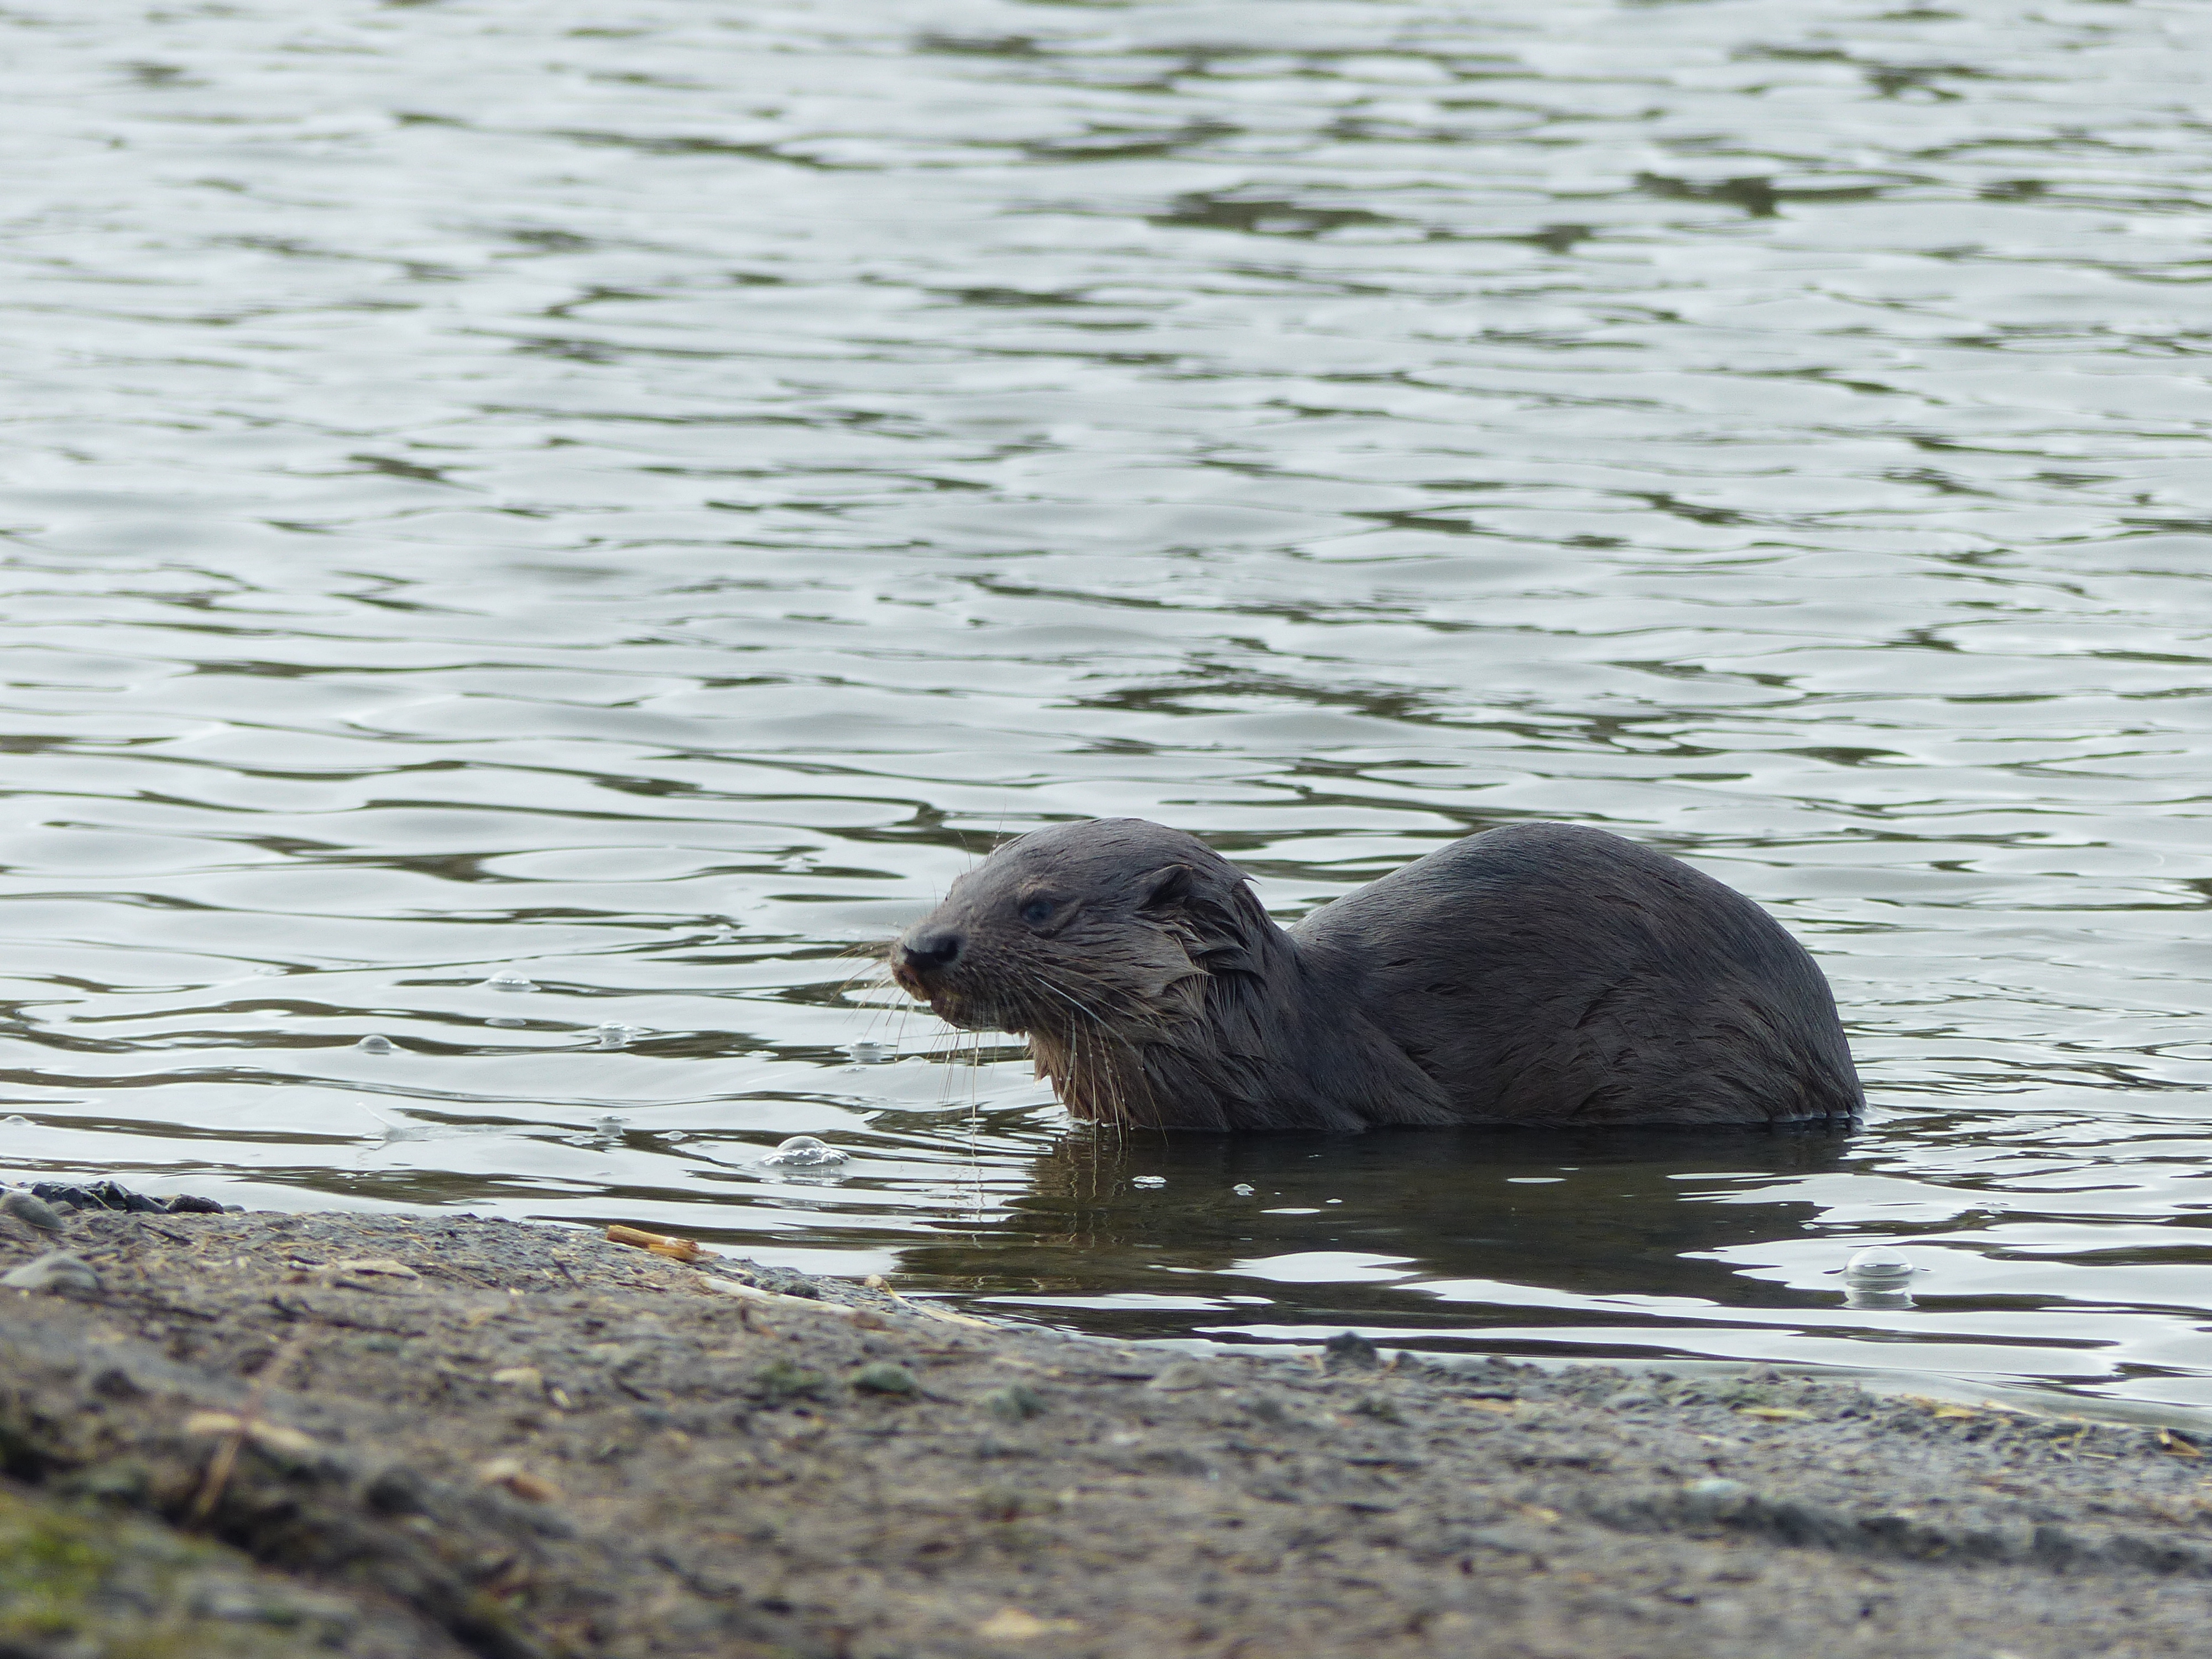 Otter still enjoying the Whooper Pond!